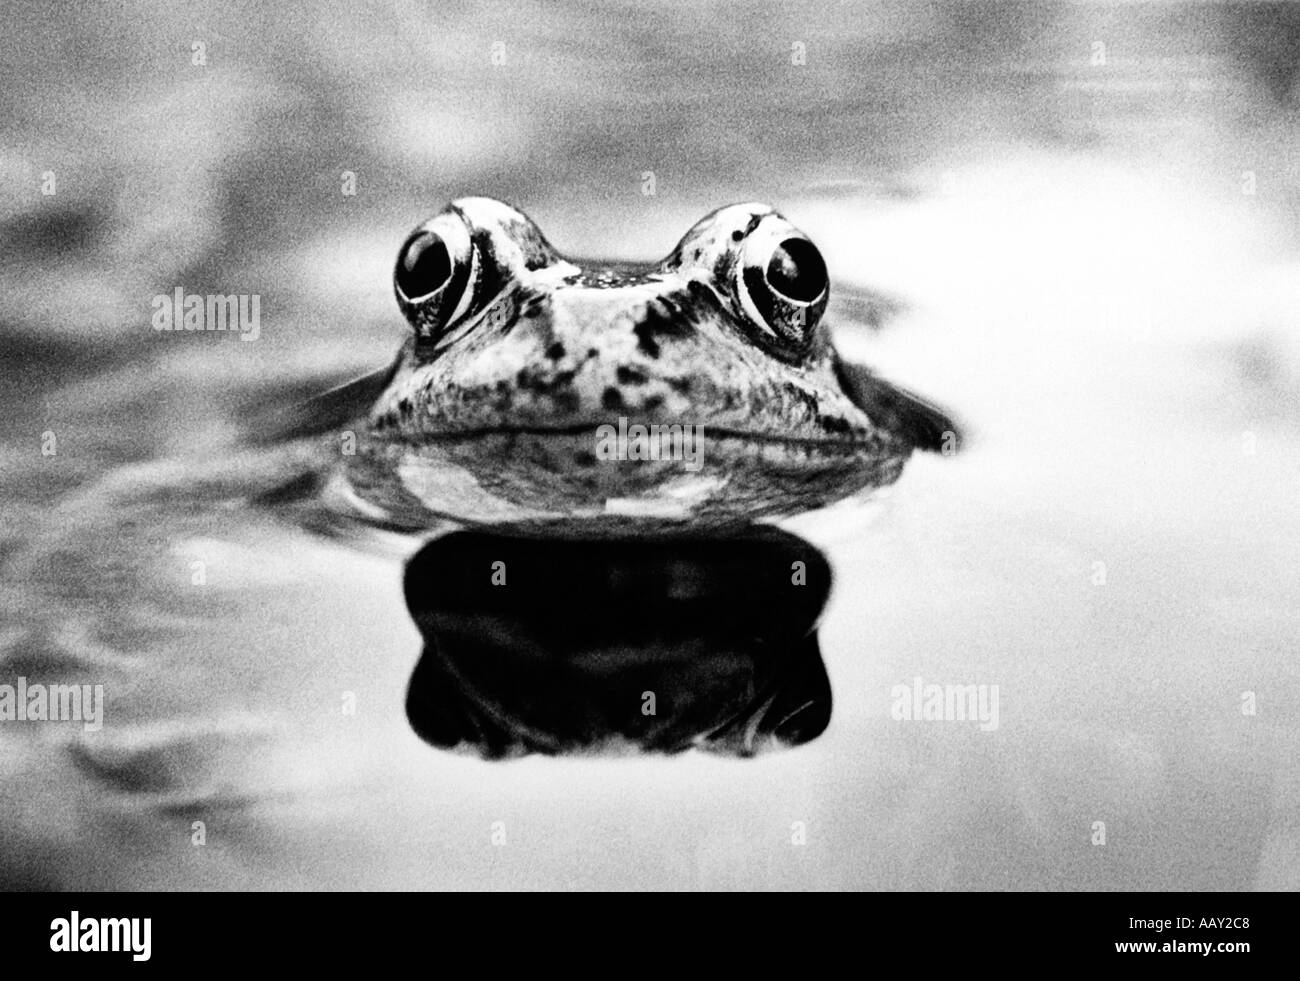 La grenouille rousse, Rana temporaria, PHOTO DE JOHN ROBERTSON POUR ALAMY UTILISATION SOUS LICENCE Banque D'Images